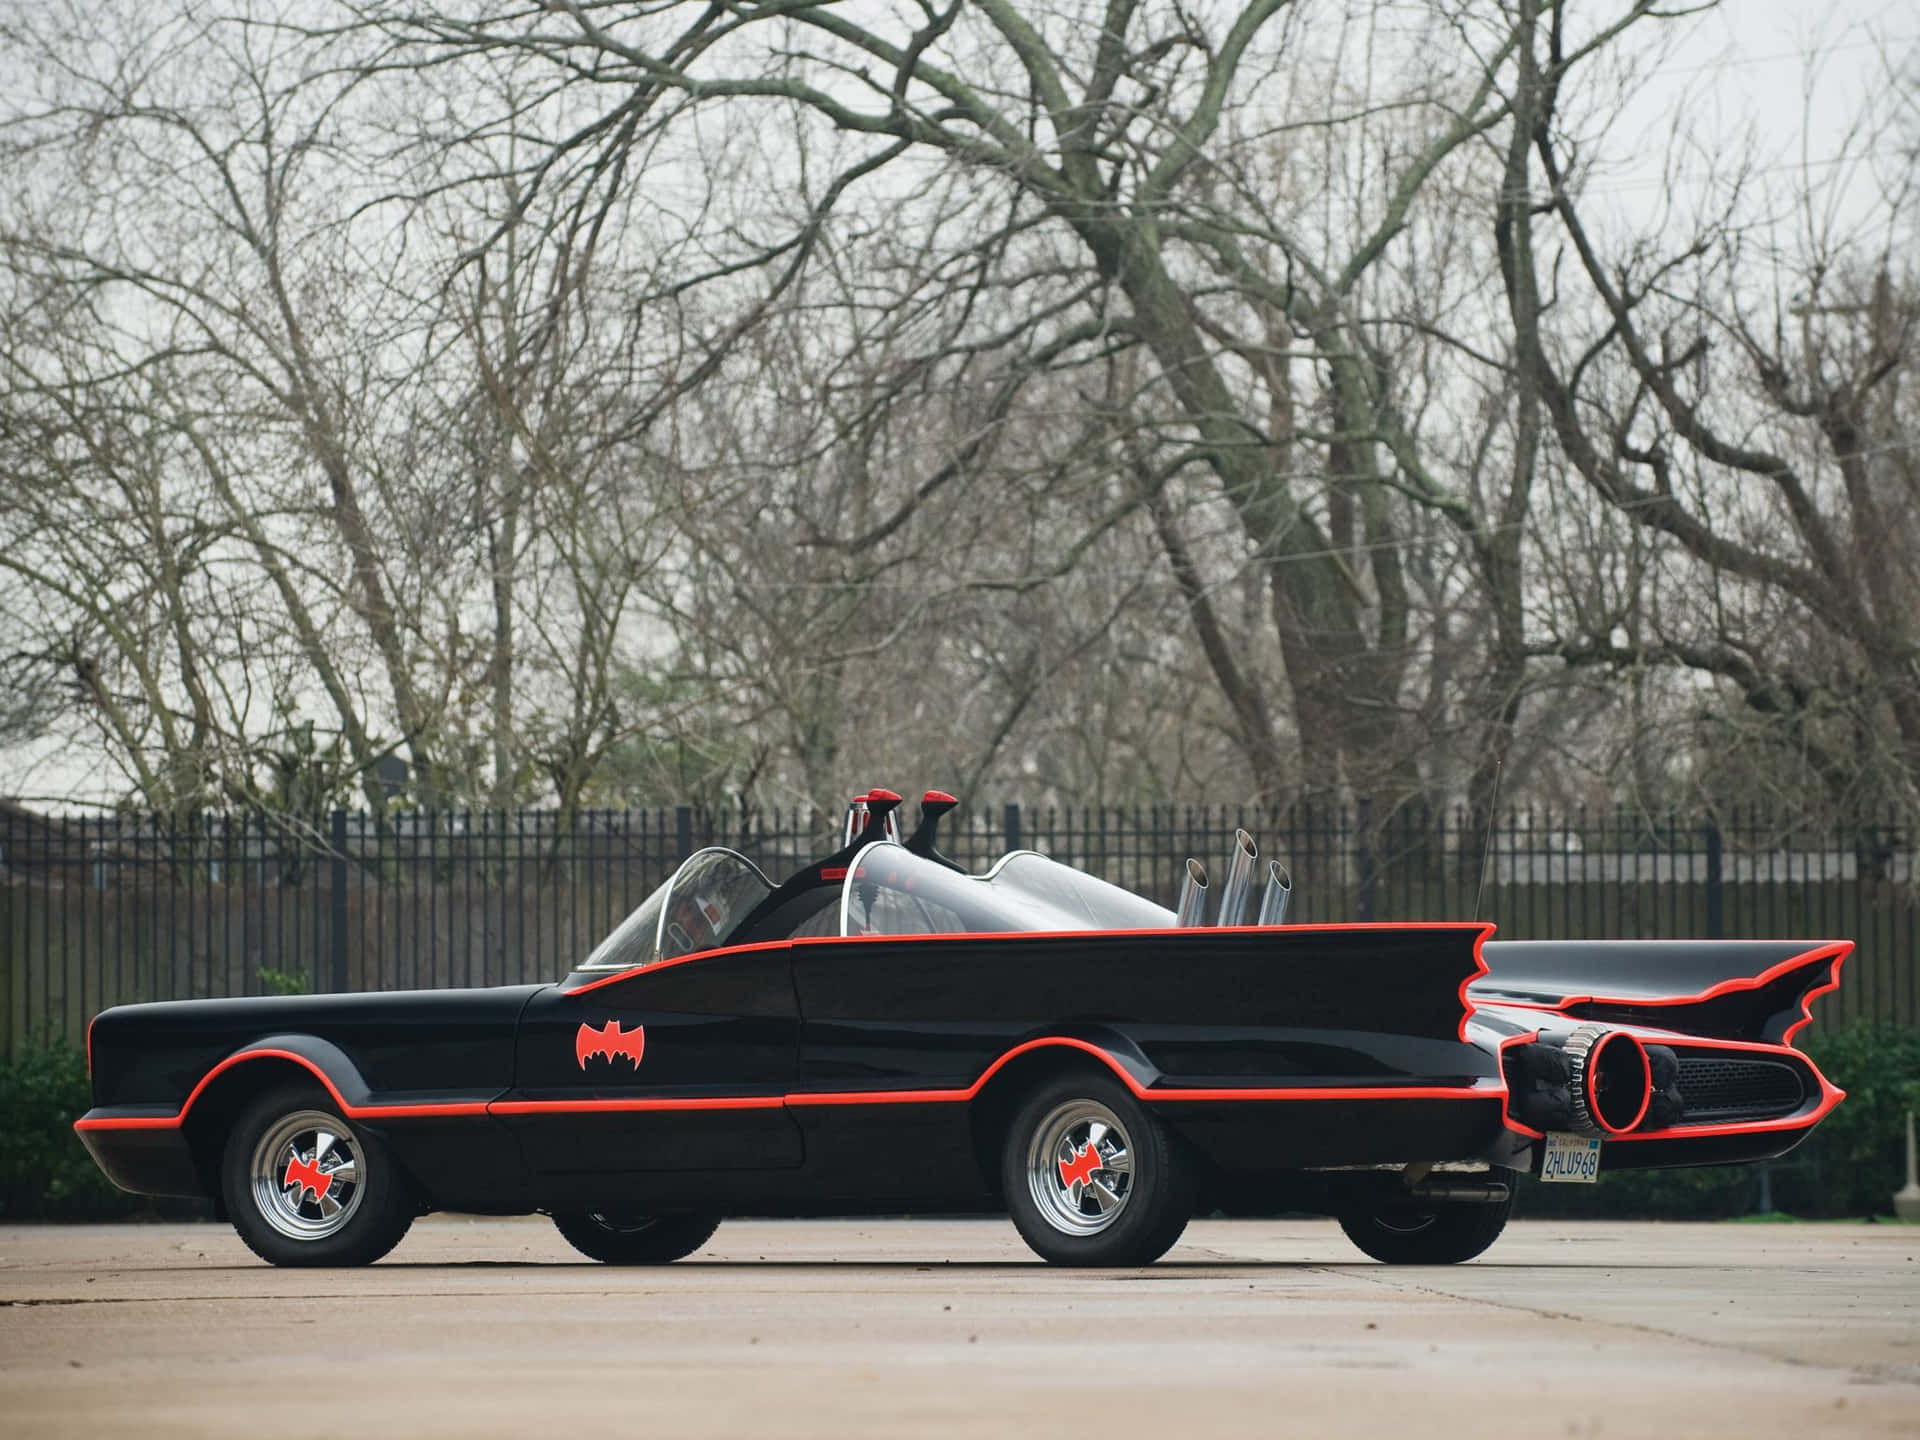 Batman Car Replica Red Black Background